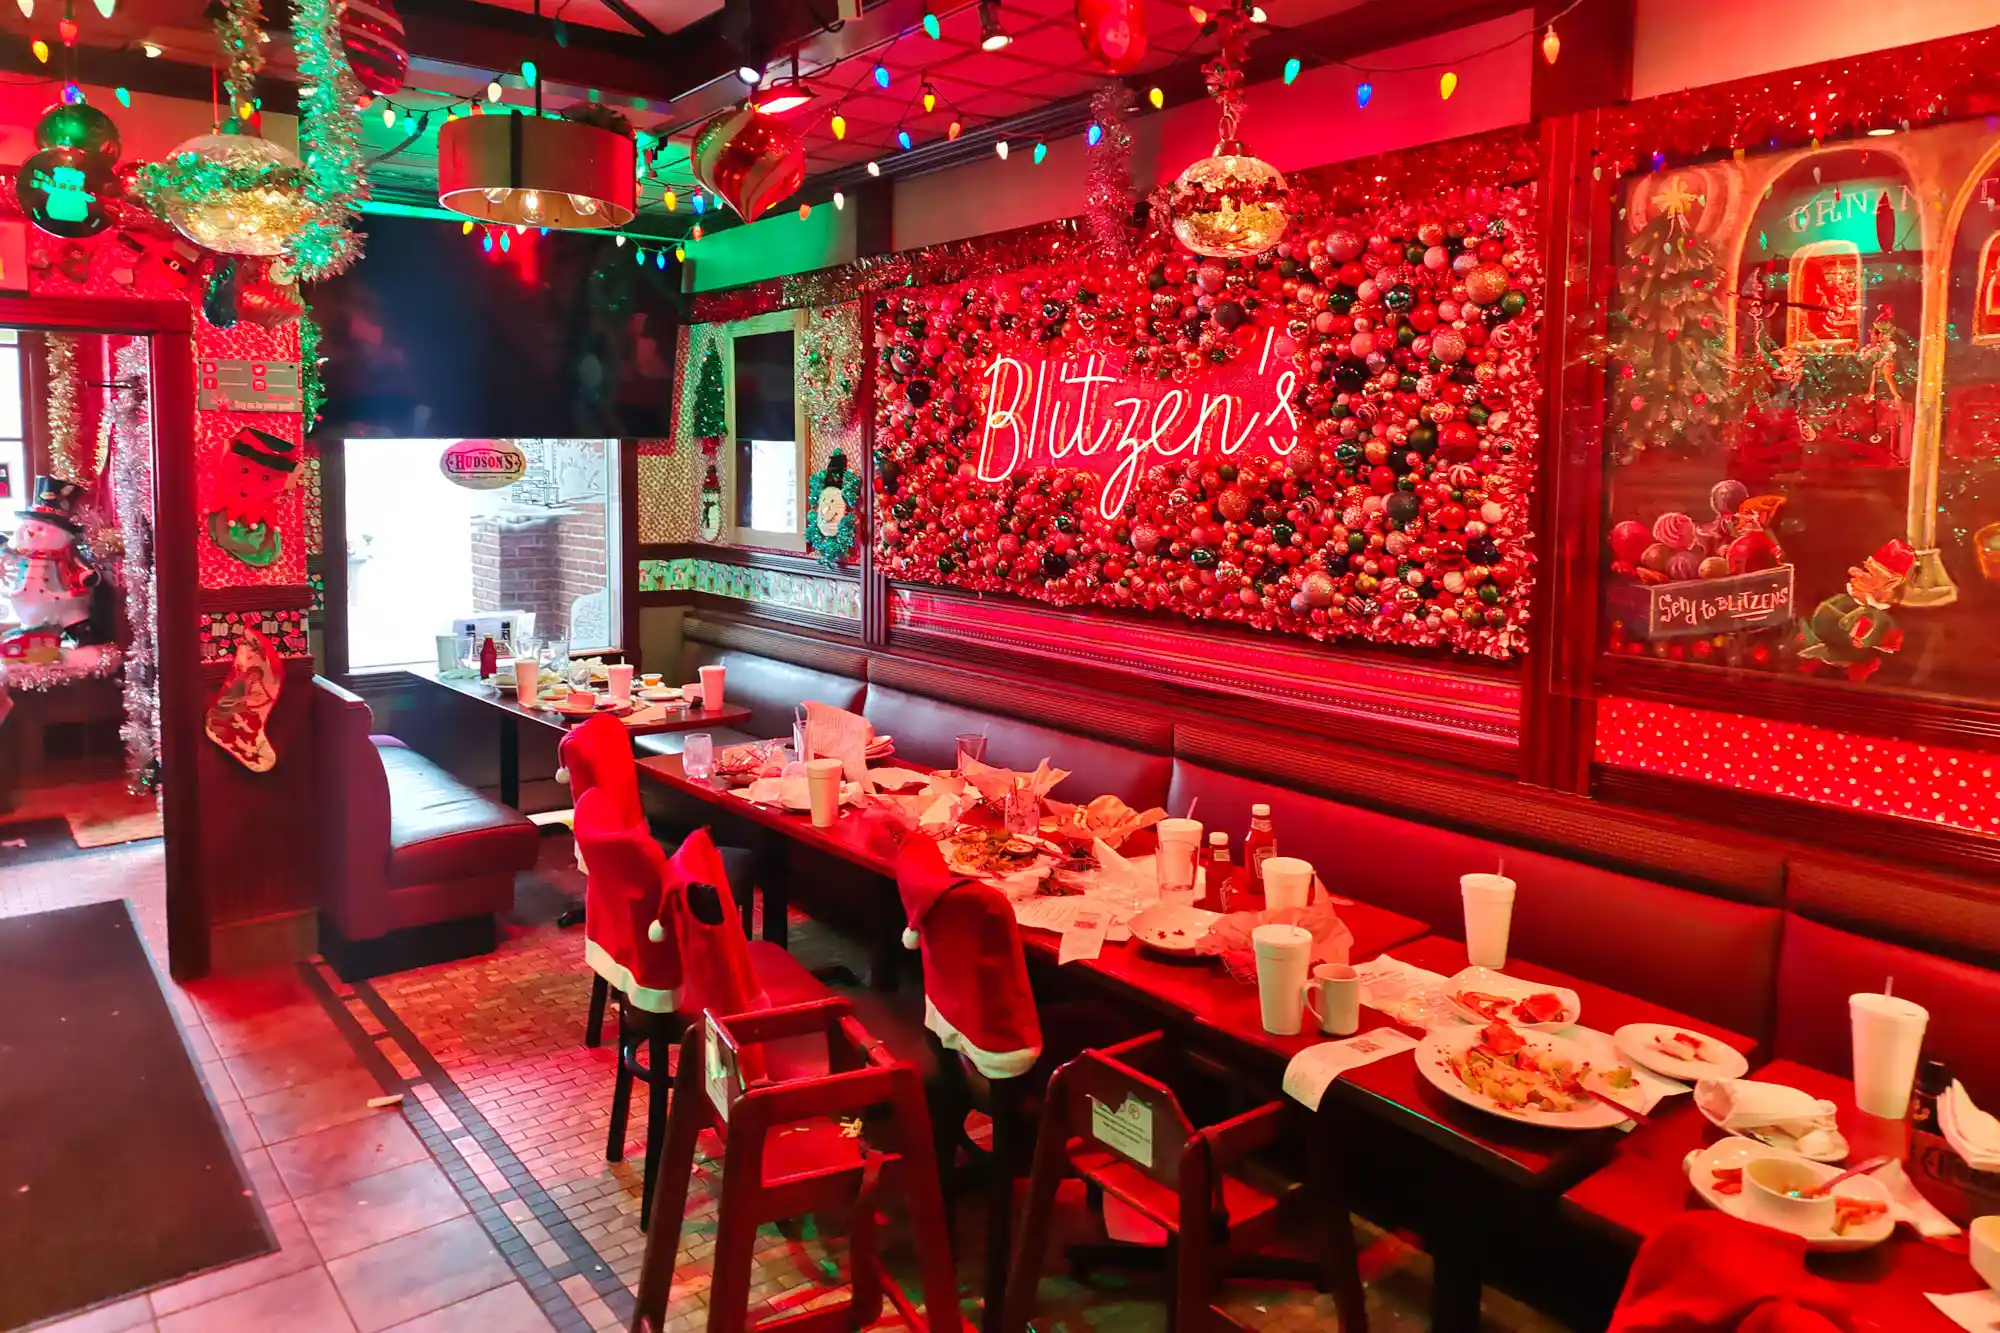 Blitzen's Hudson Restaurant deocrated for Christmas